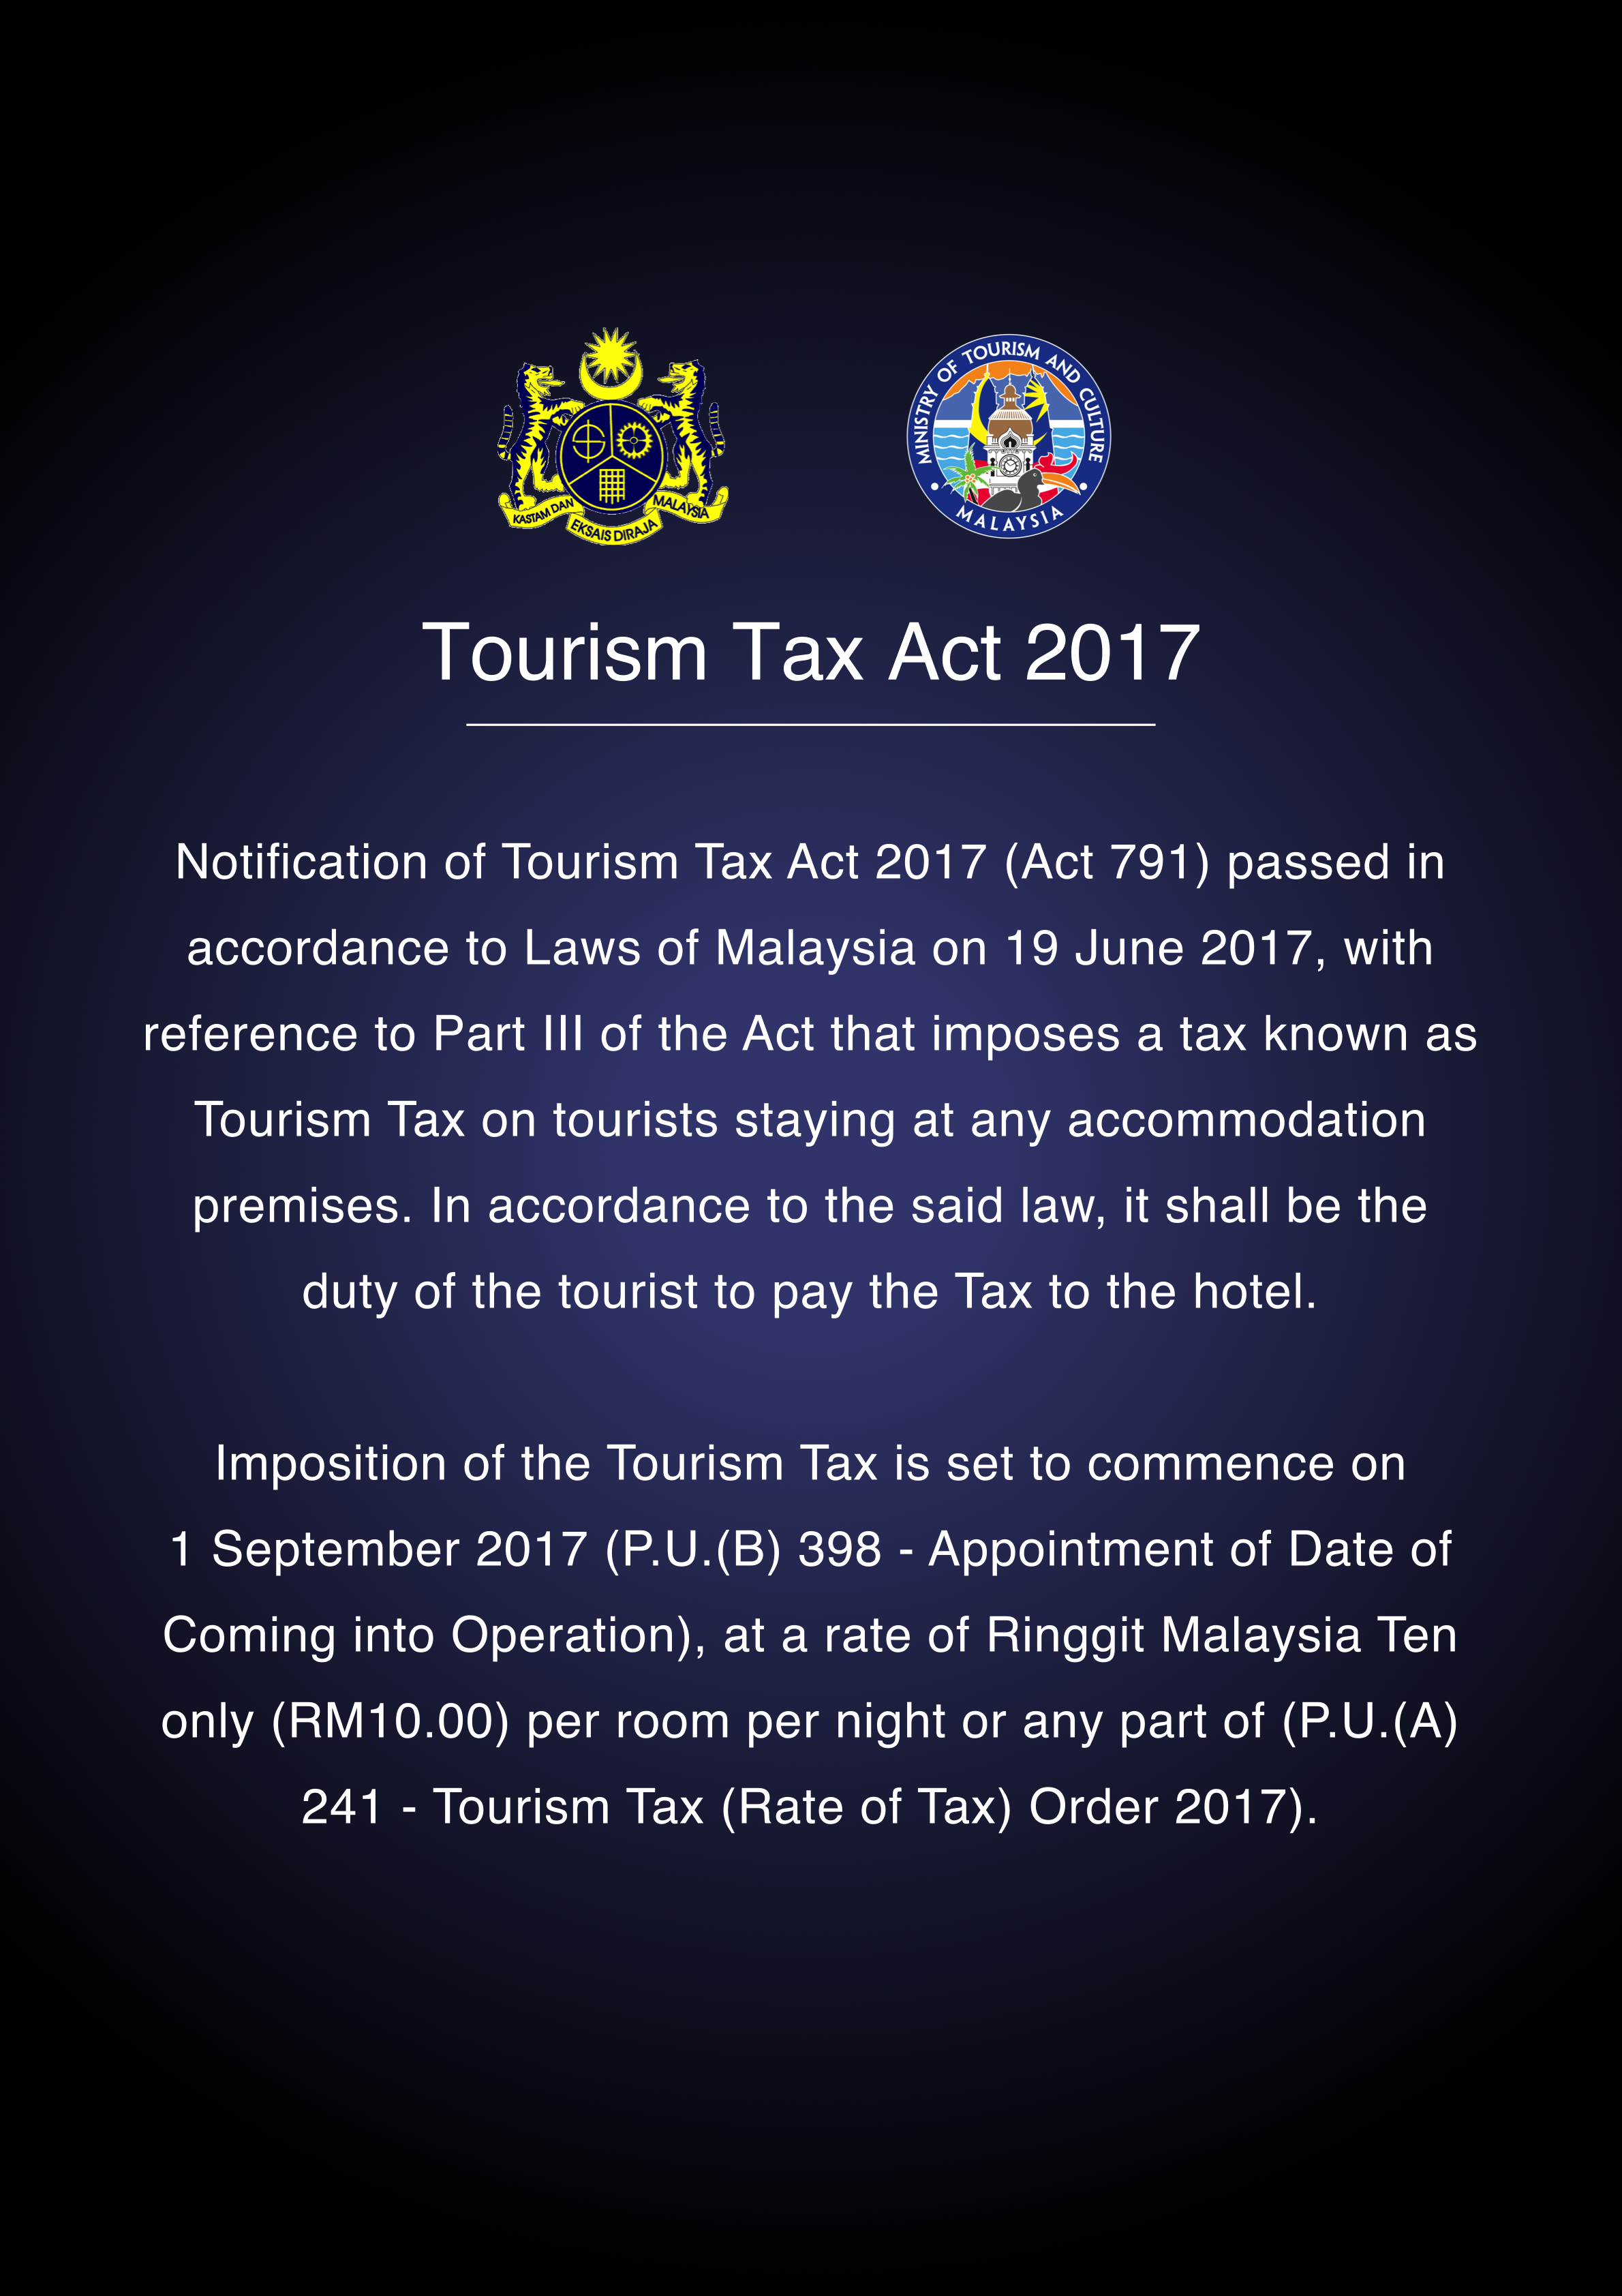 tourism-tax-starting-1st-september-2017-lkpp-de-rhu-beach-resort-kuantan